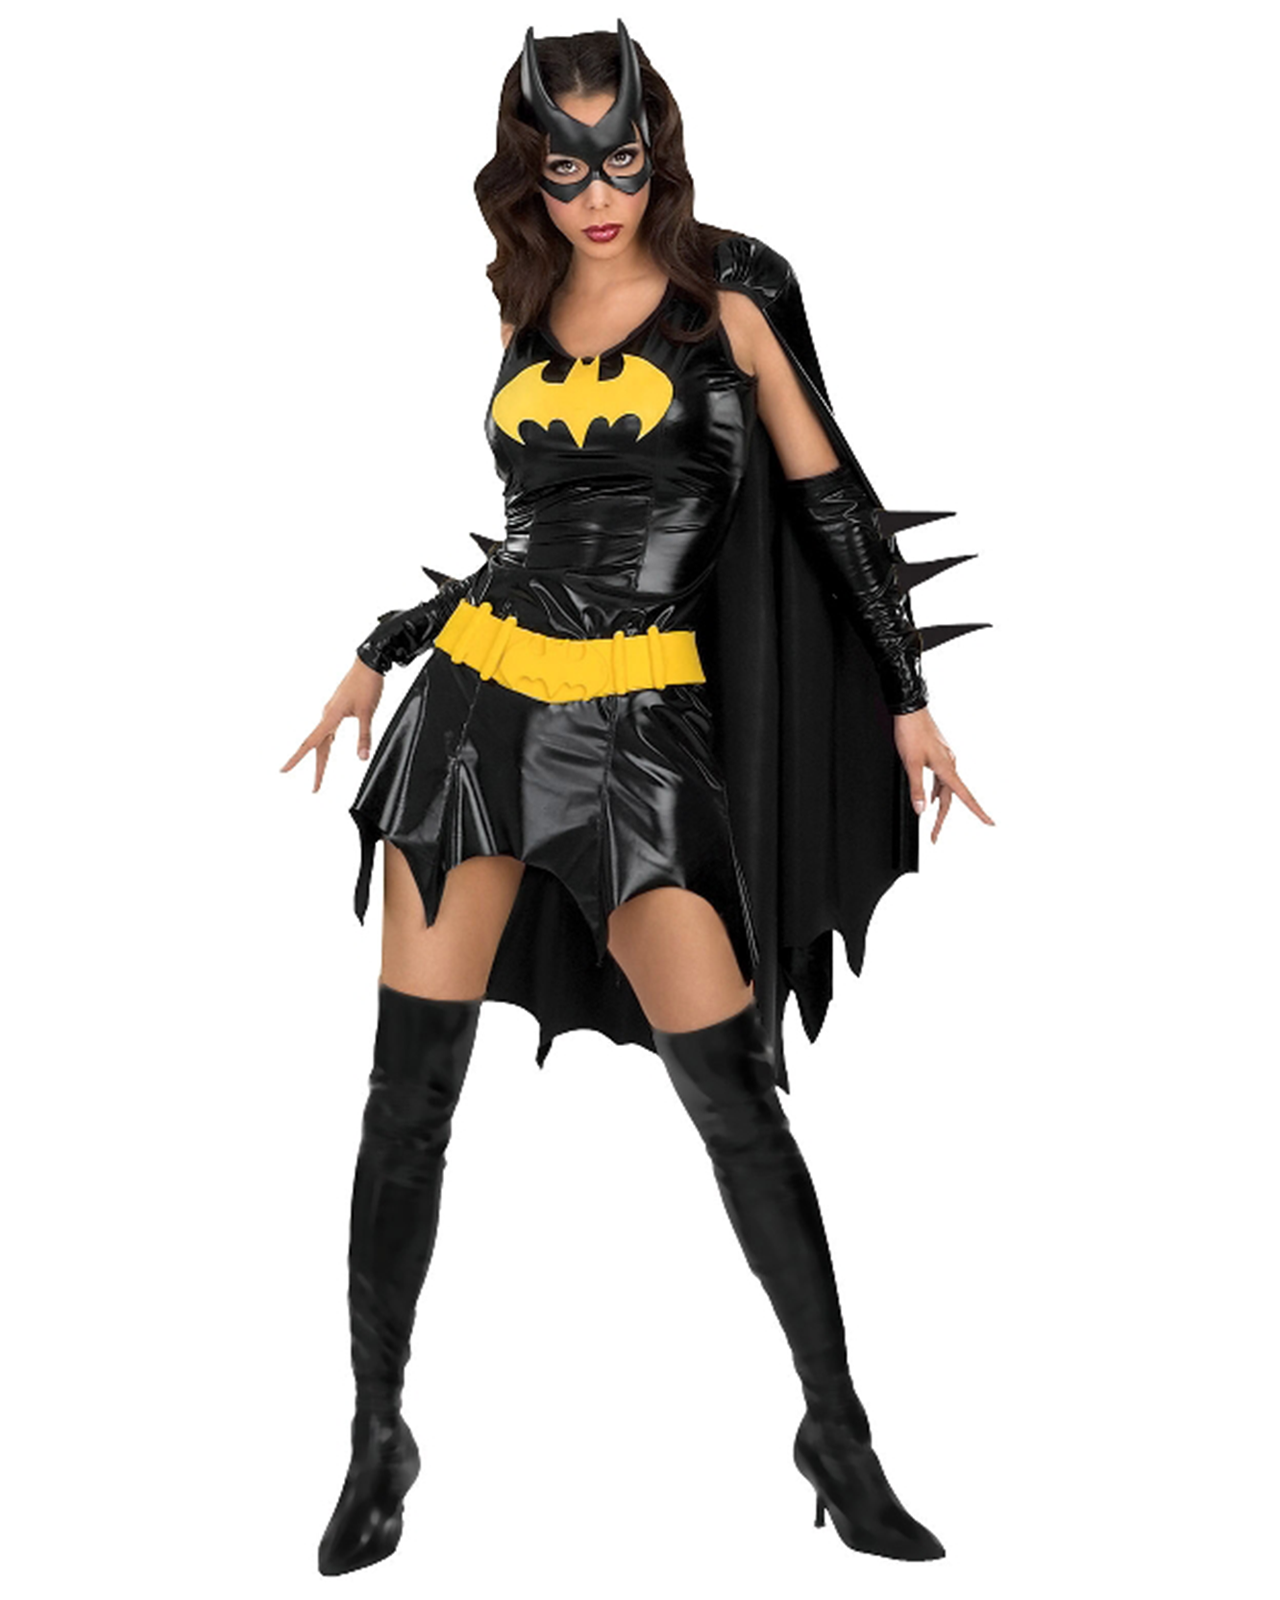 Batgirl Secret Wishes Costume